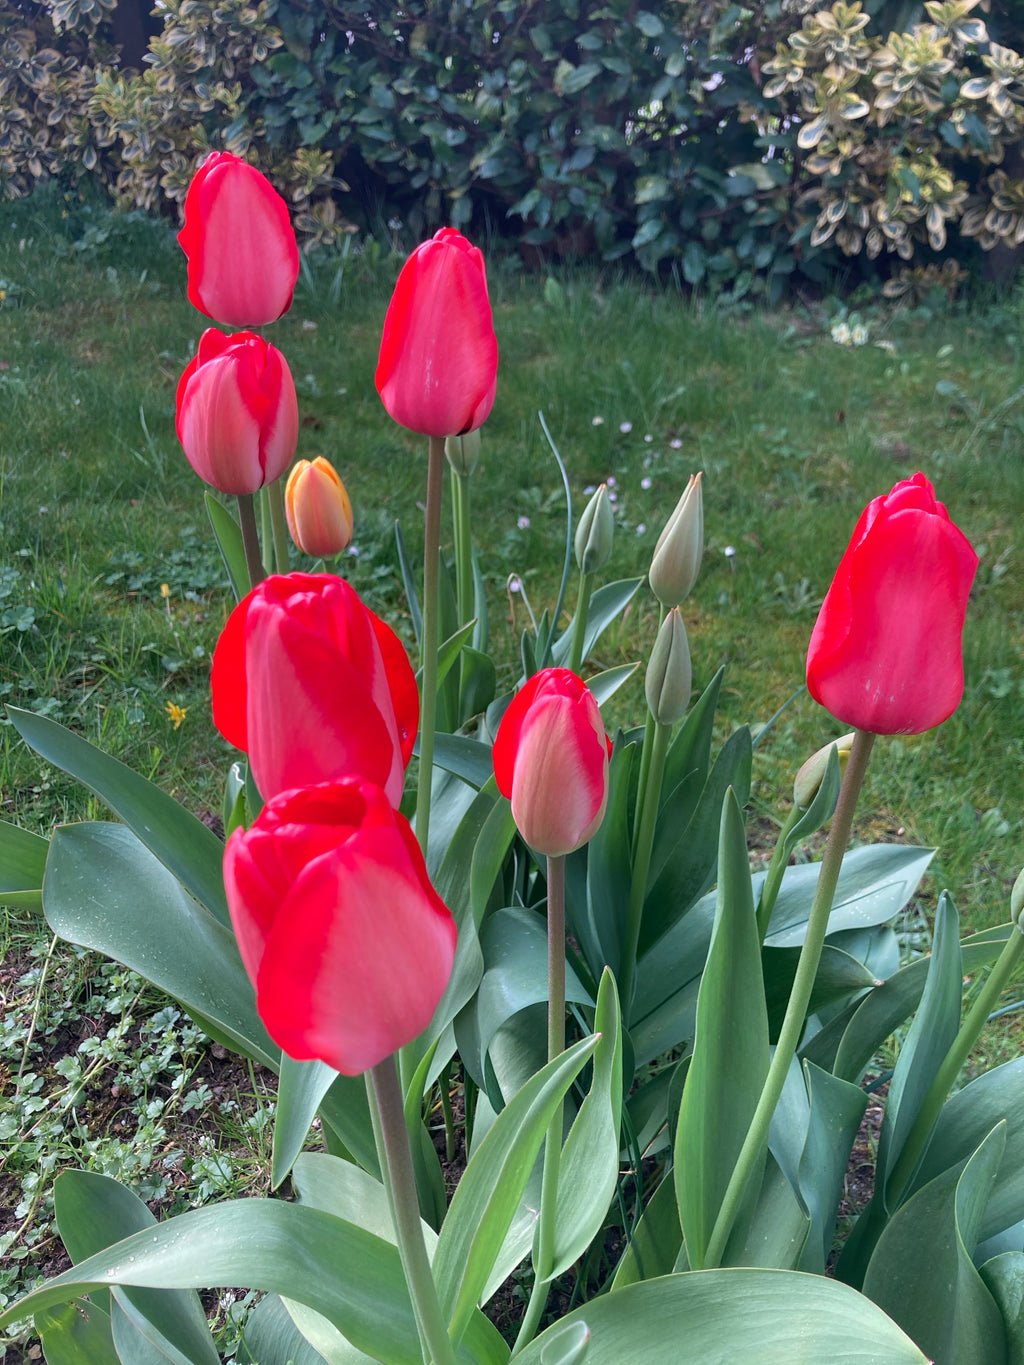 20 Pink Tulip Bulbs 'Van Eijk' (Free UK Postage)